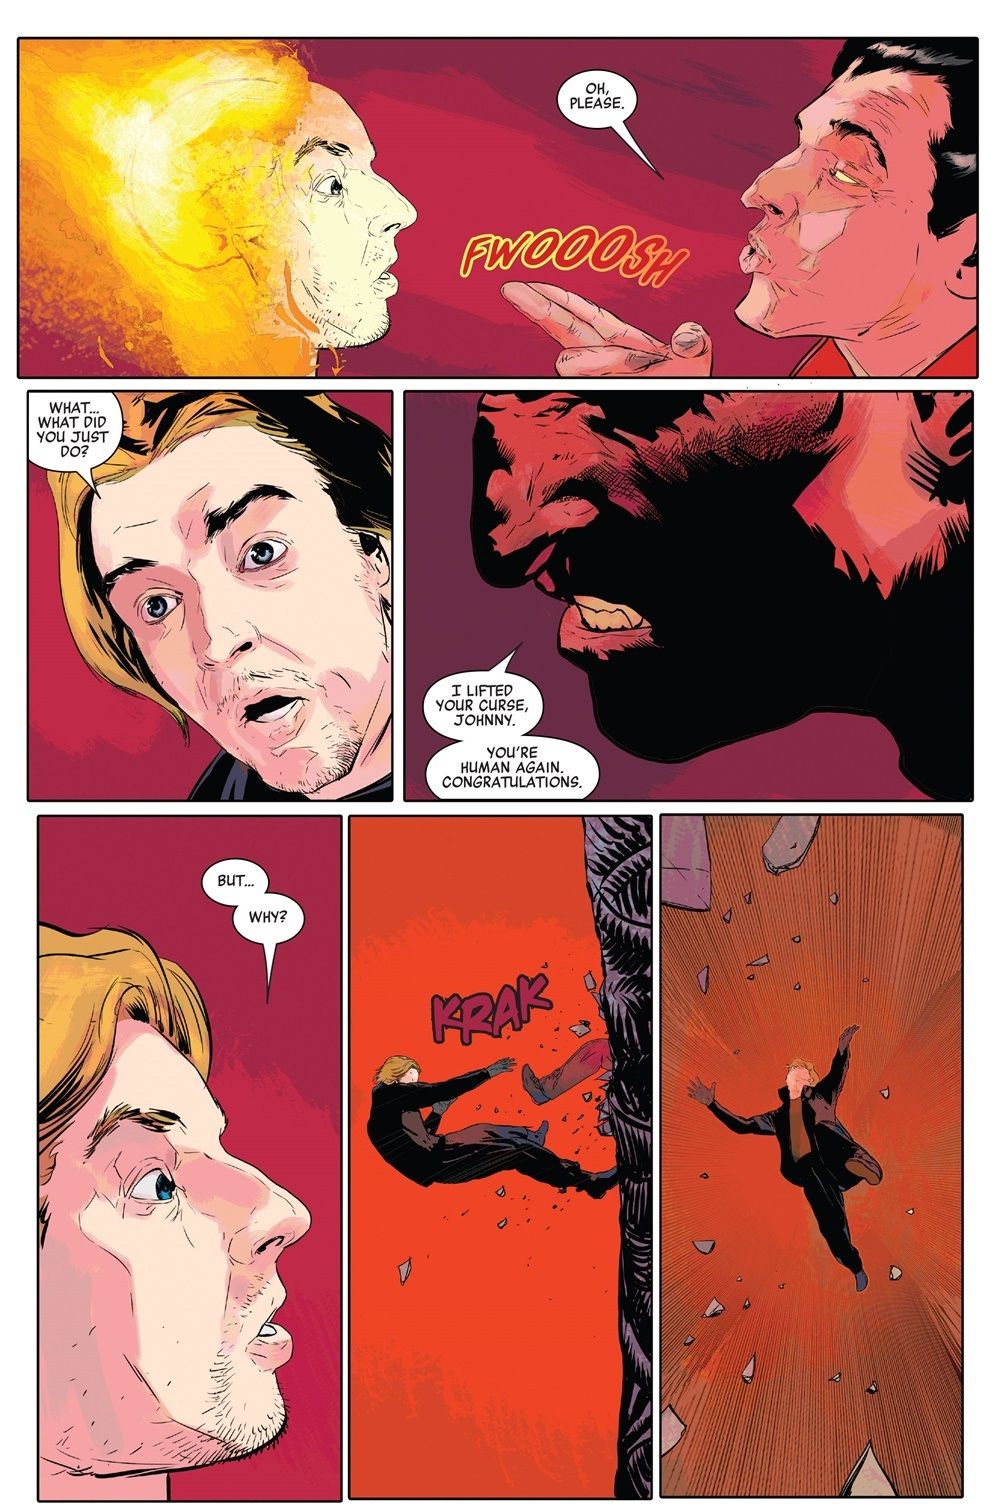 Doctor Strange Damnation Johnny Blaze death